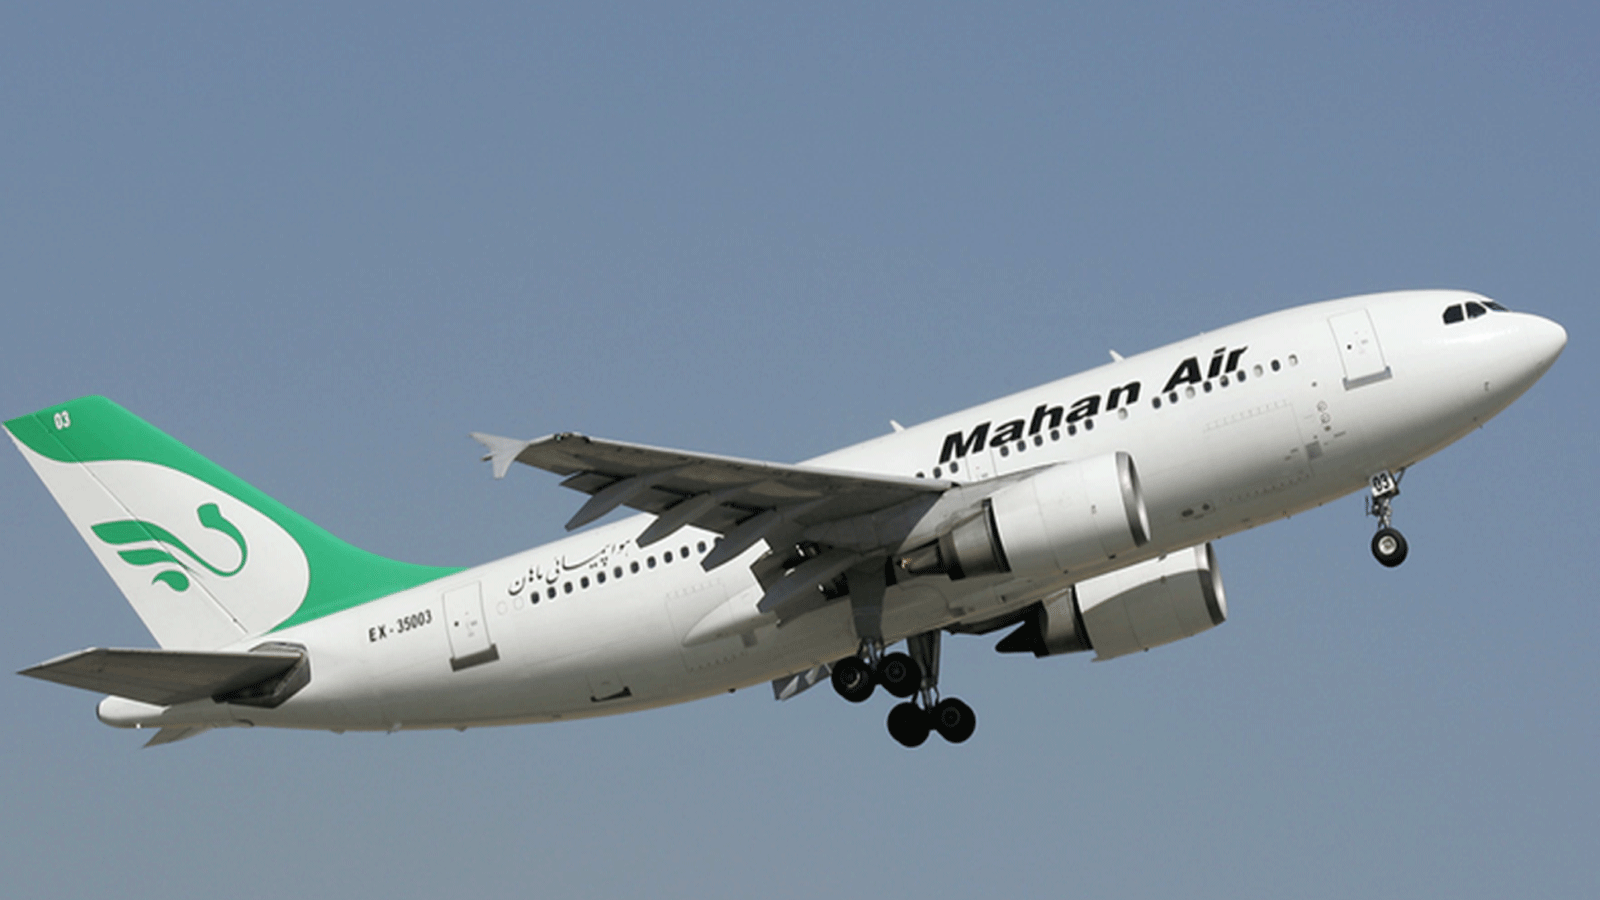 ماهان إير هي ثاني أكبر شركة طيران في إيران.